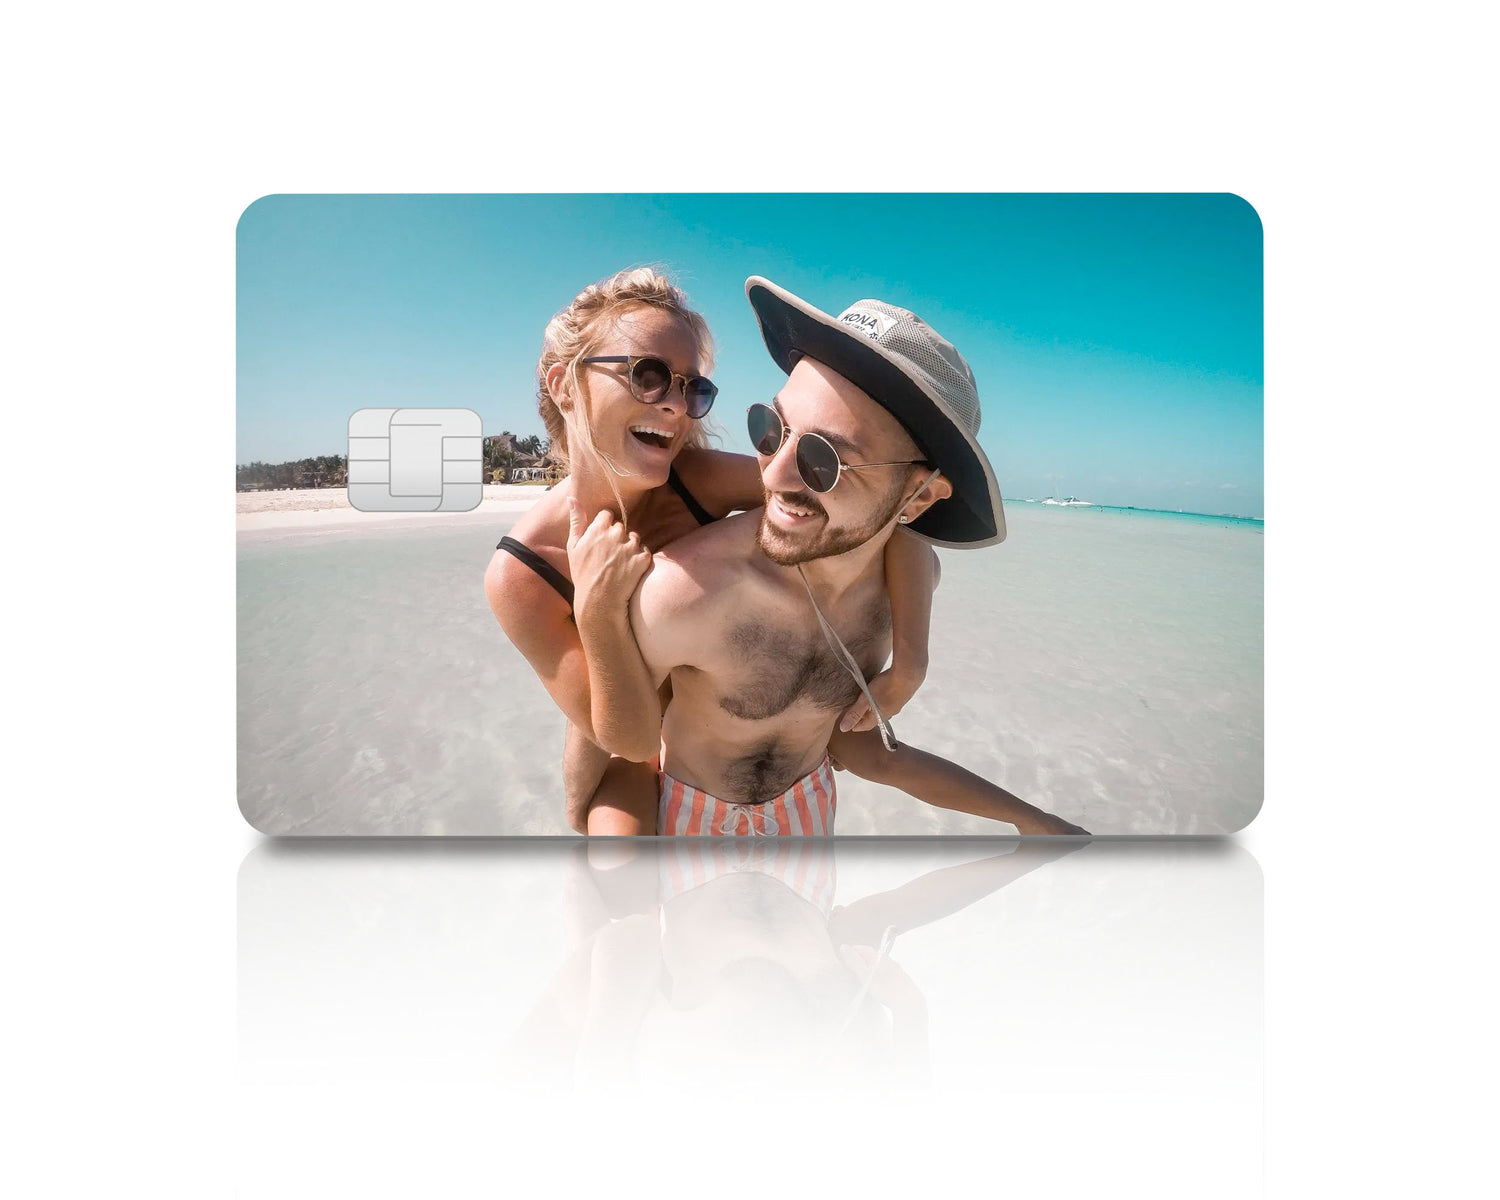 Shop Atm Card Skin Sticker online - Oct 2023